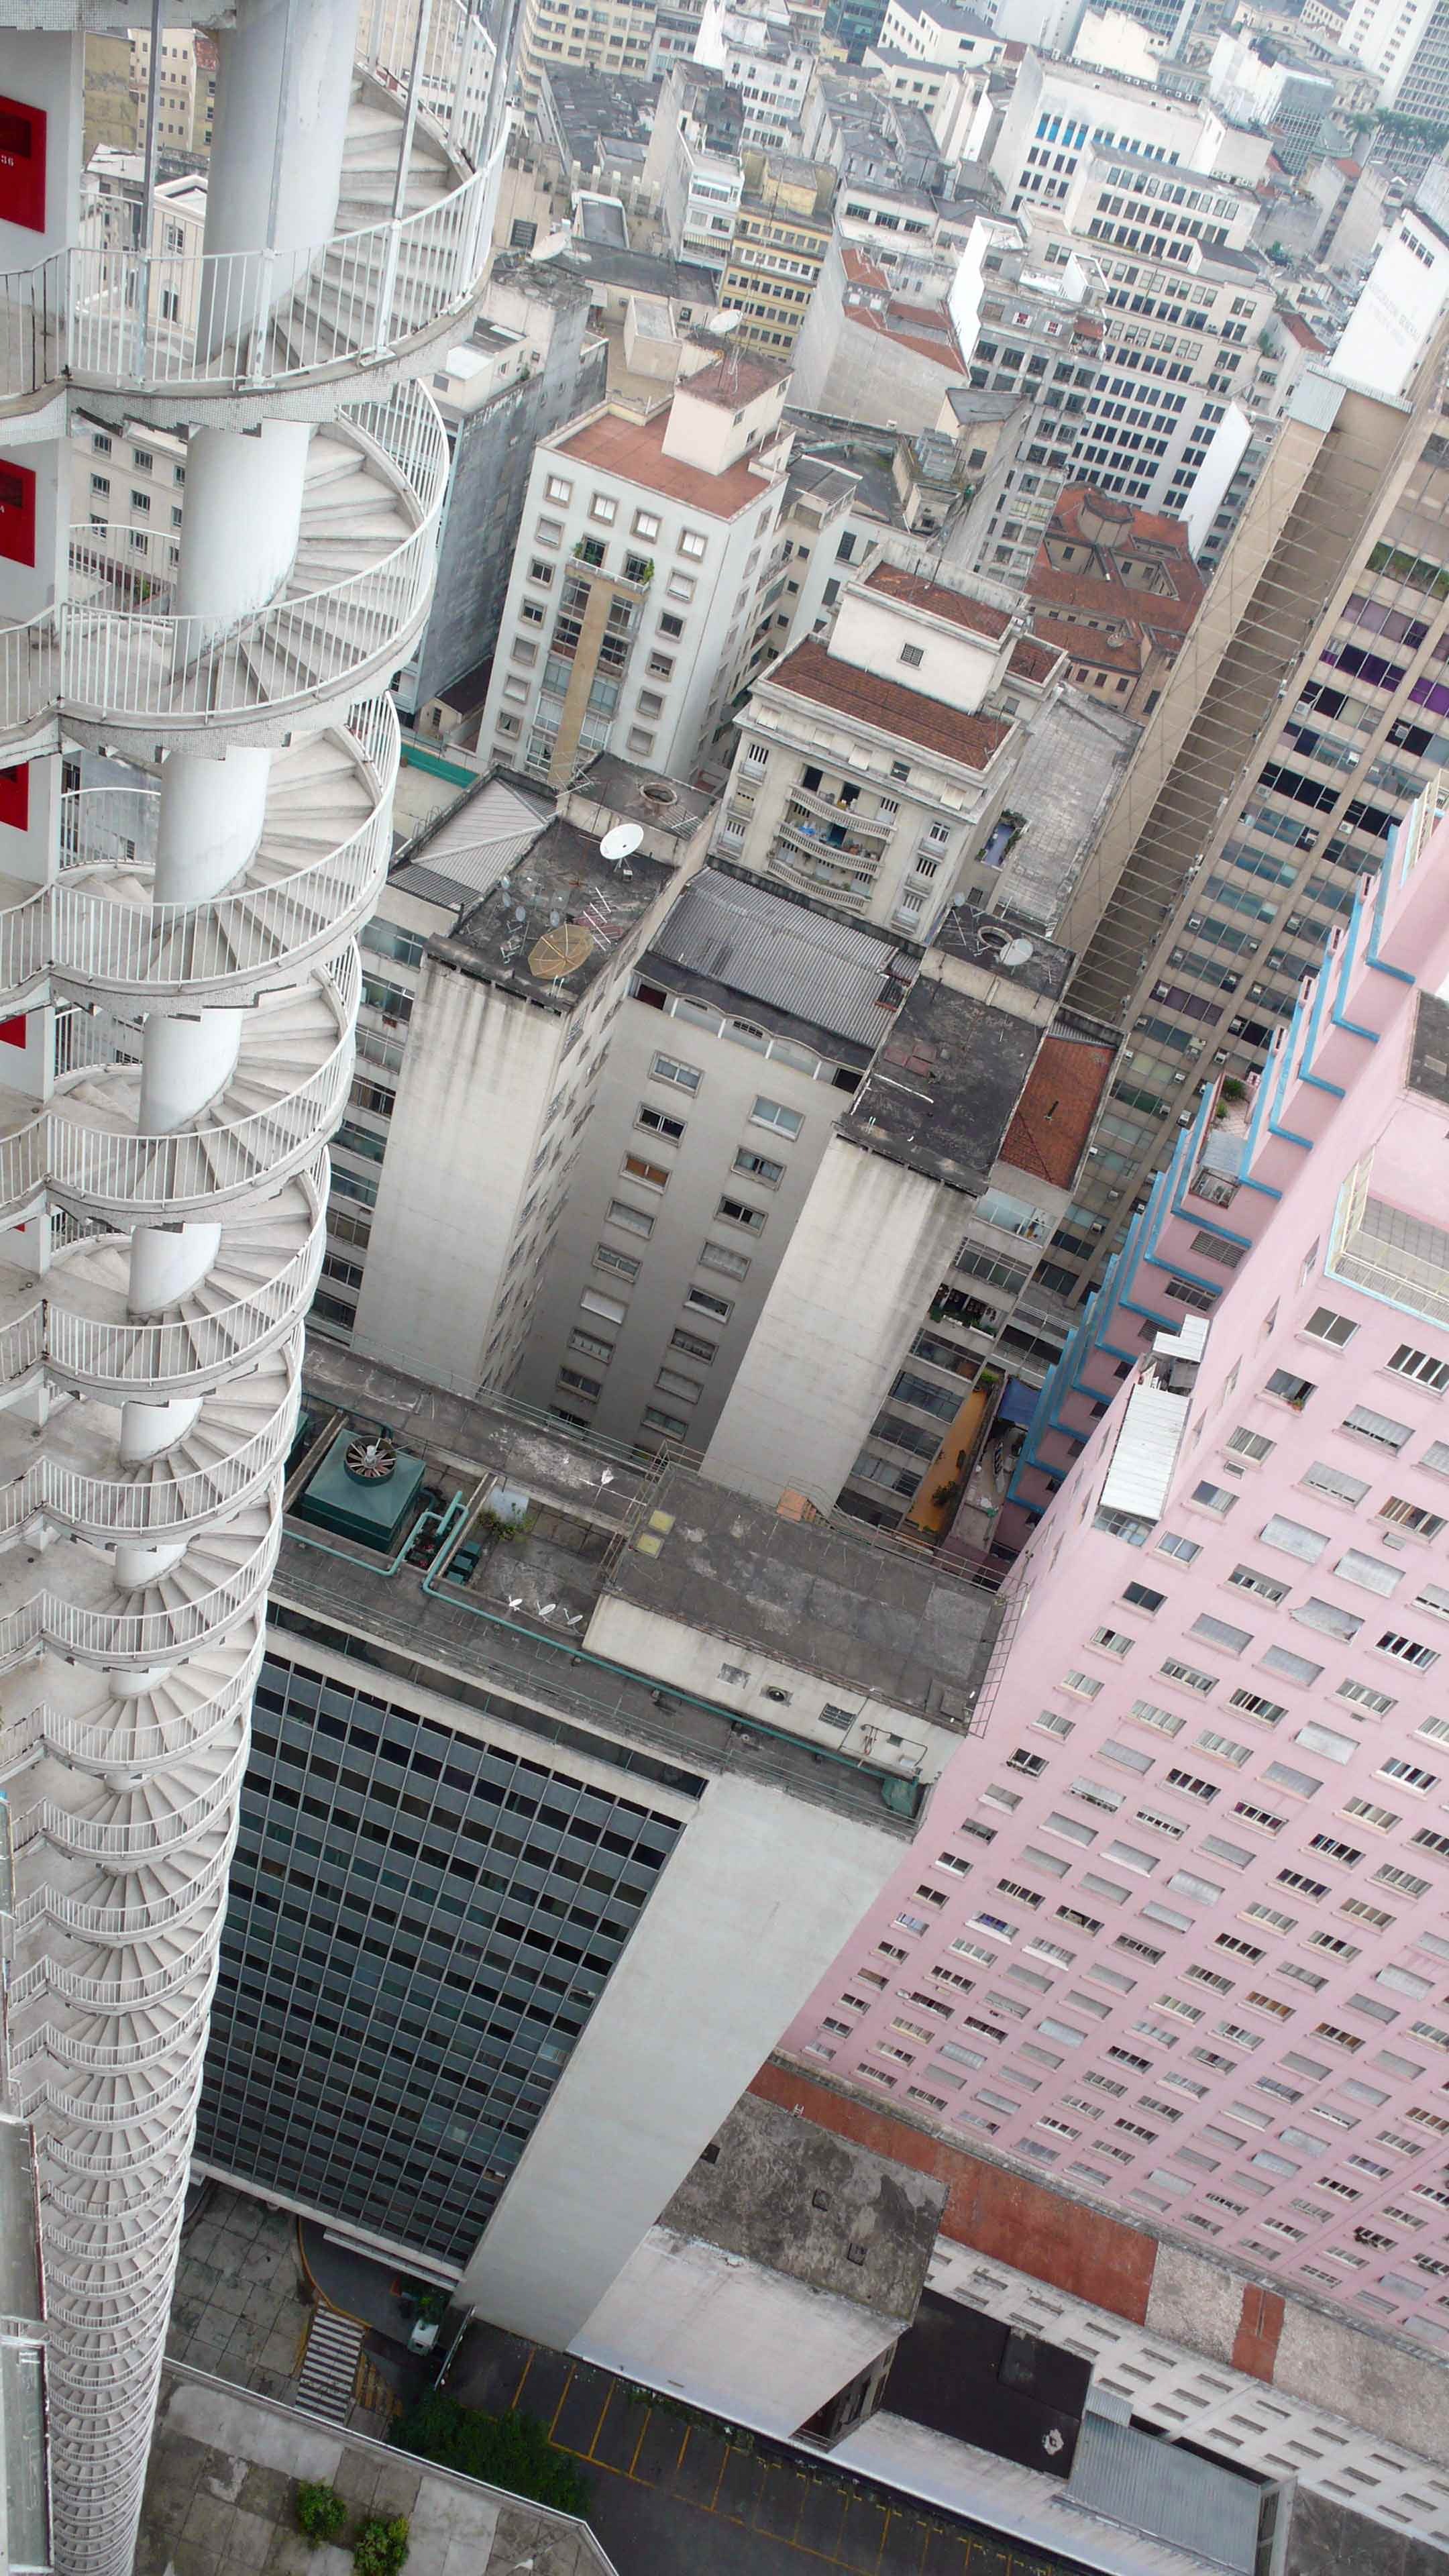 Au Brésil, il y a un immeuble d'appartements avec un escalier en colimaçon de 40 étages fixé à l'extérieur et destiné à servir d'issue de secours. Qu'est-ce qui te fait le plus peur ? Le feu ou la chute ?